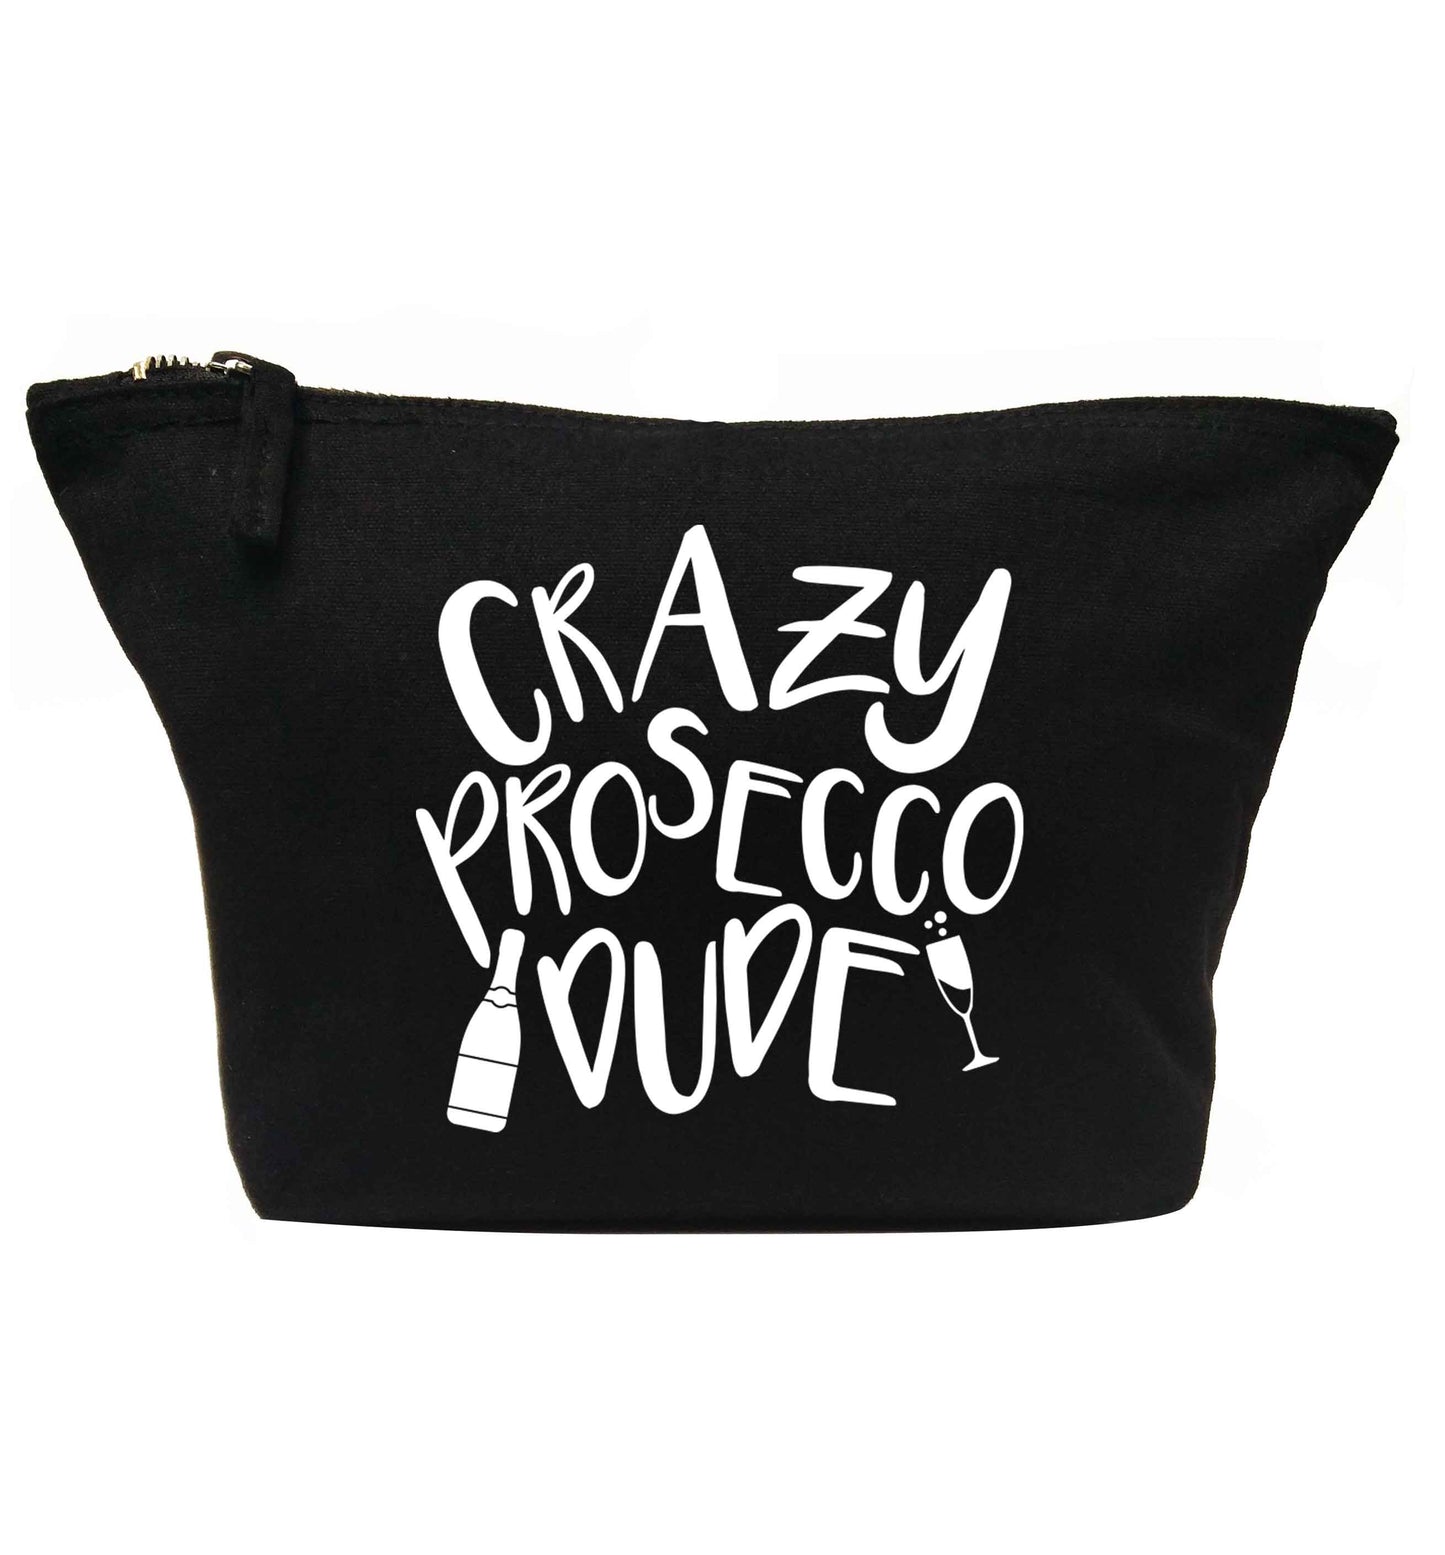 Crazy prosecco dude | makeup / wash bag